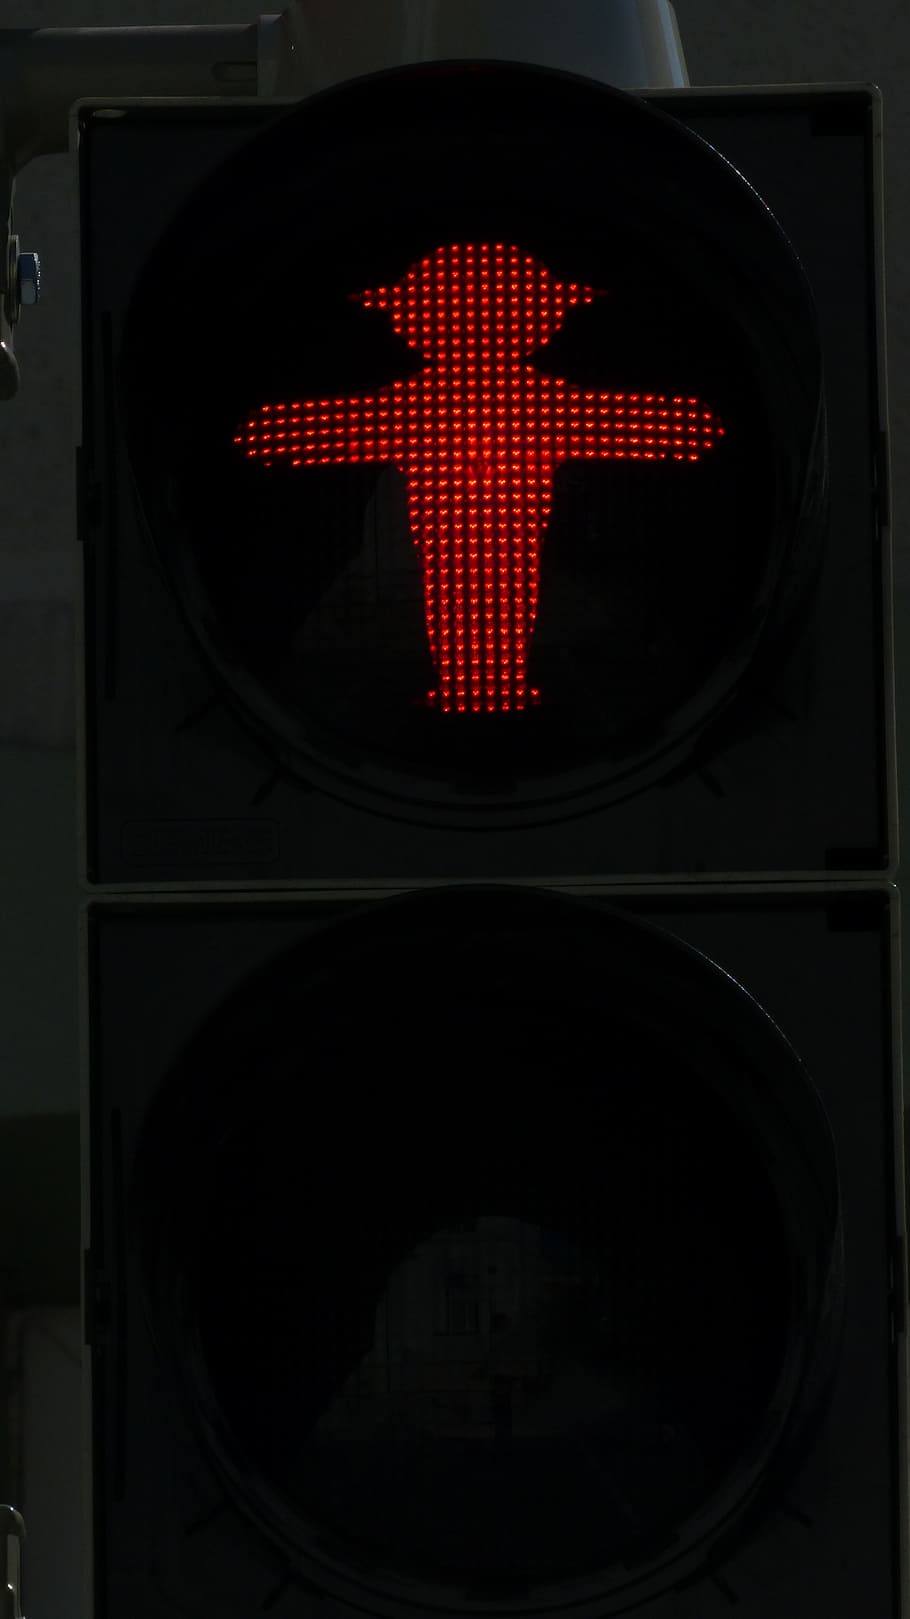 信号, 歩道橋, 小さな緑の男, 交通信号, 赤, 男性, 光信号, 足のギアの男性, 道路標識, 道路